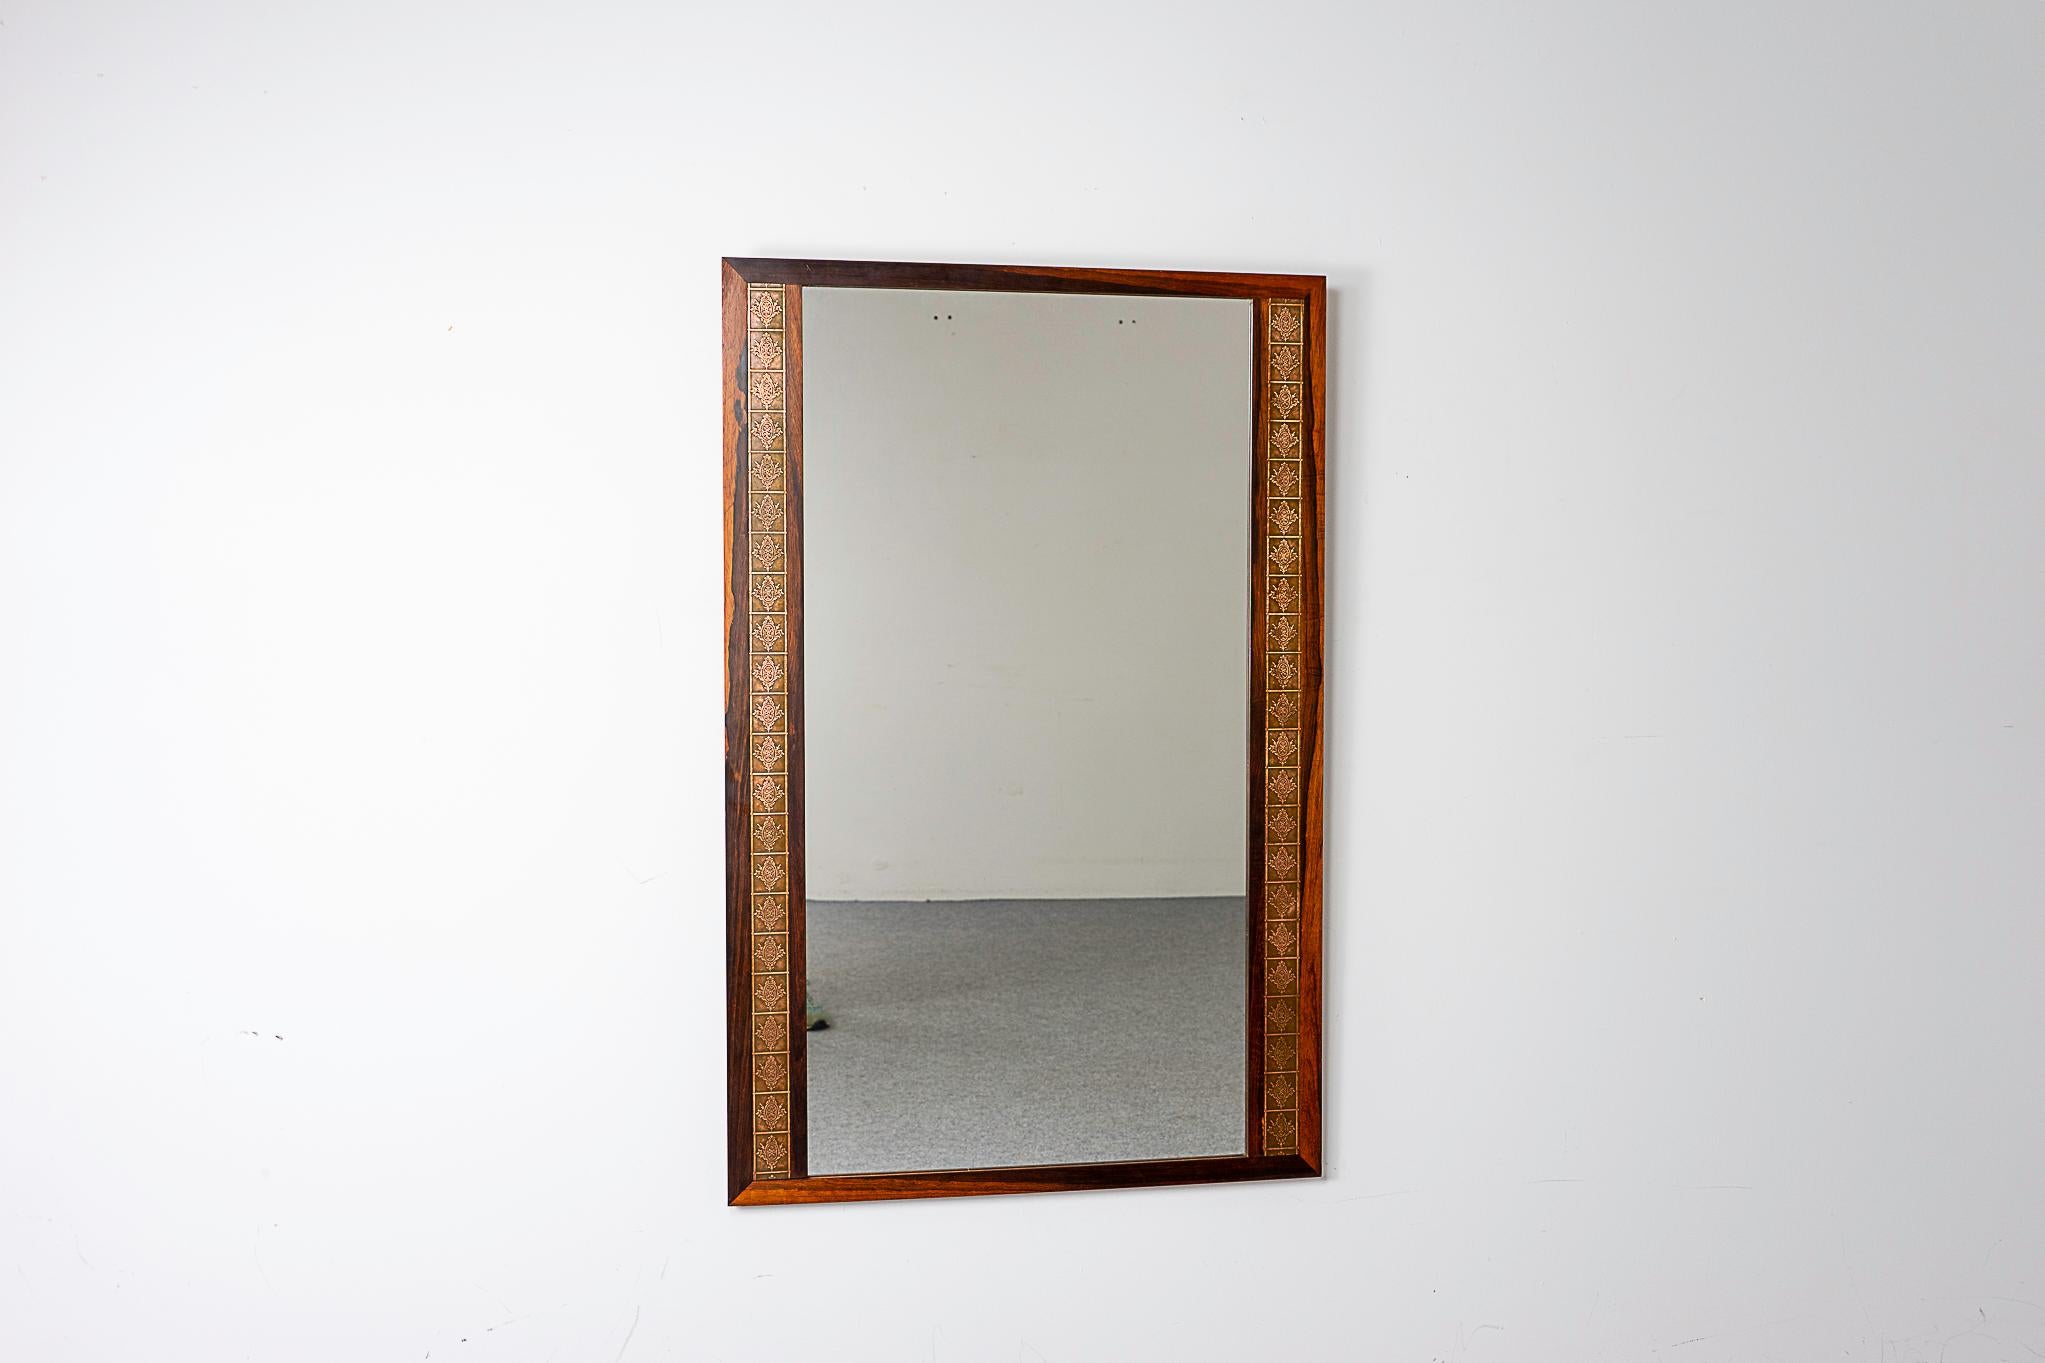 Dänischer Spiegel aus Rosenholz und Kupfer, ca. 1960. Die perfekte Ergänzung für jedes Interieur, besonders in kleinen Wohnungen, Eigentumswohnungen und Lofts, wo der Platz knapp sein kann. Dekorative geprägte Metallverzierungen auf beiden